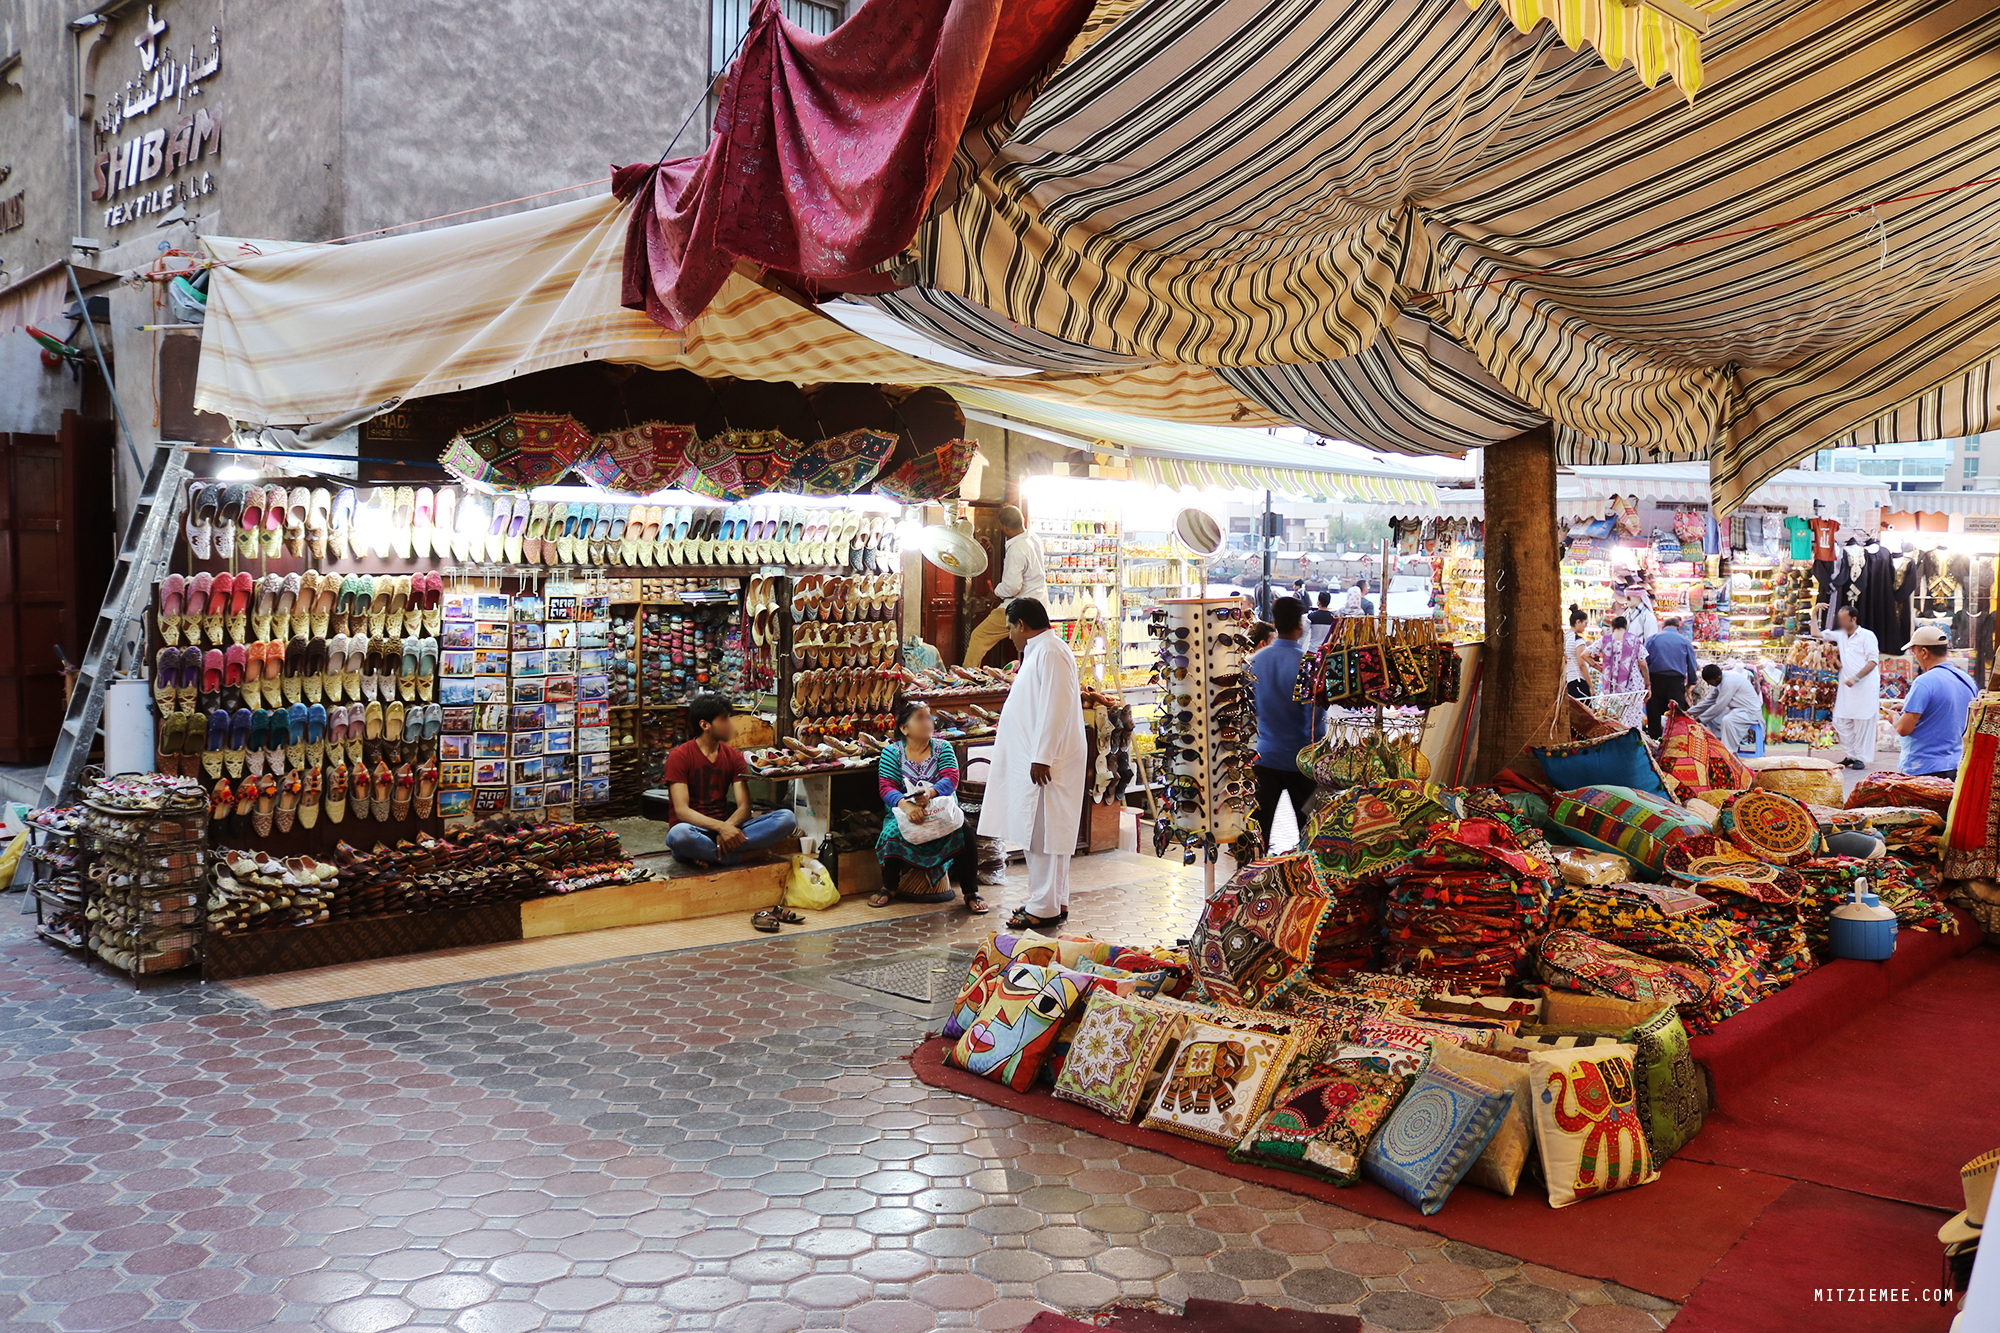 Dubai Shopping - What to buy? - Dubai Guide | Mitzie Mee